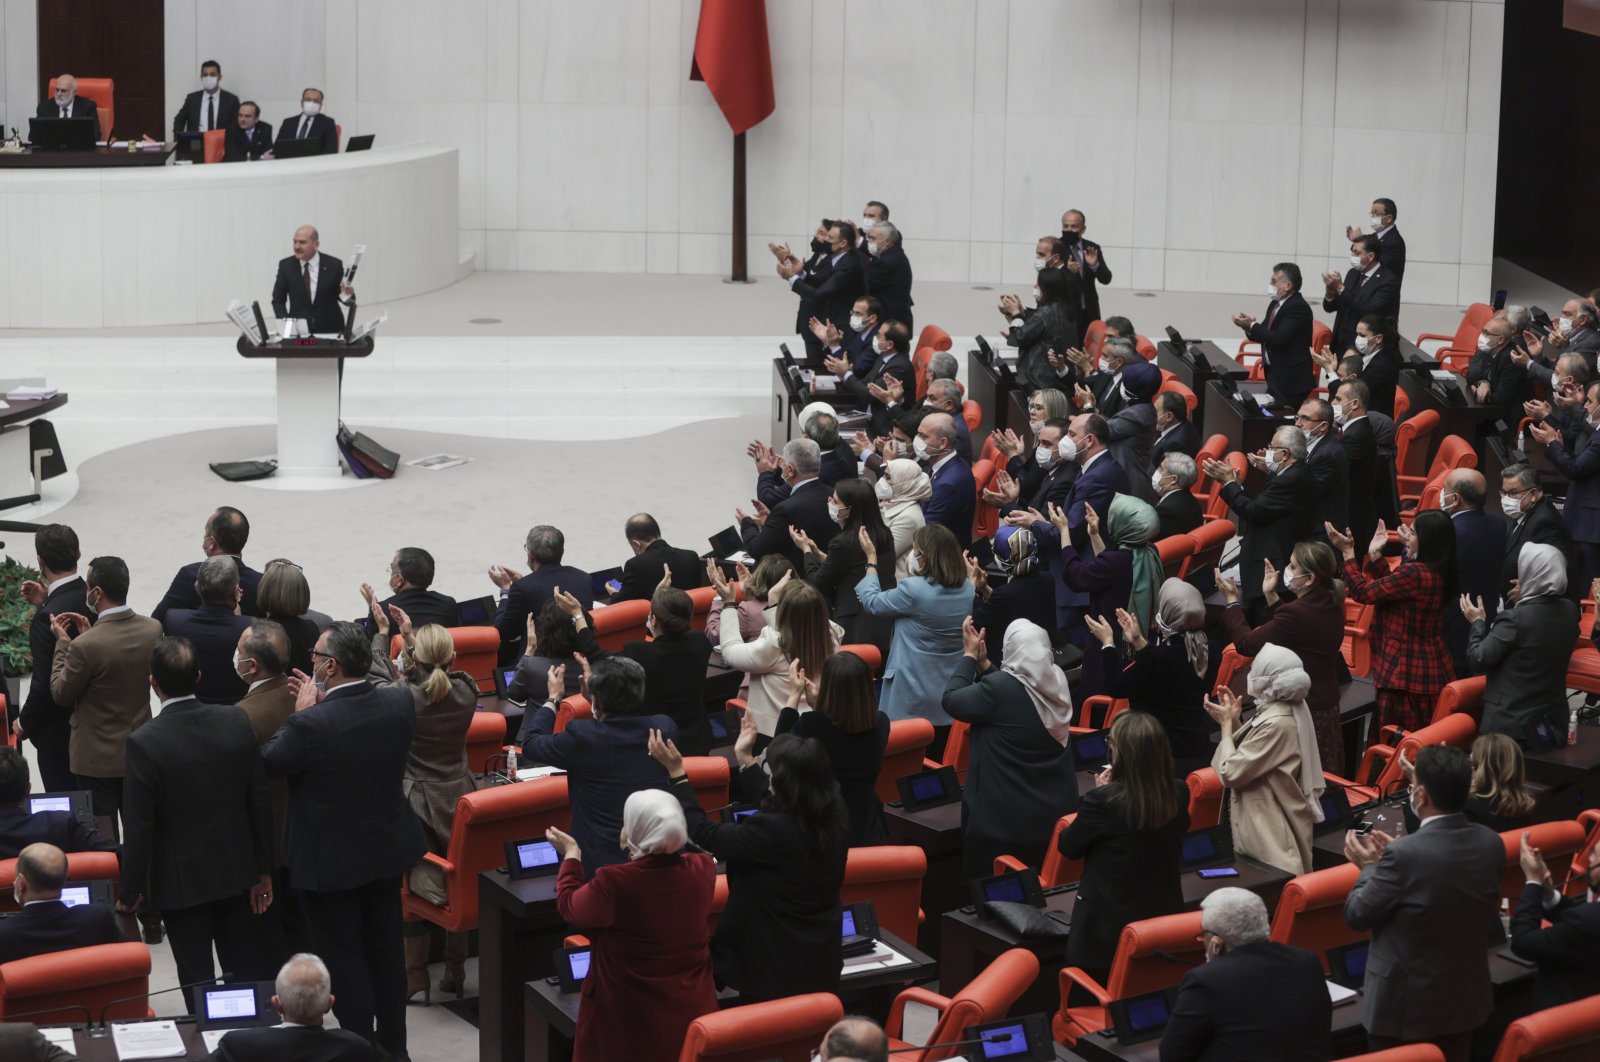 Kurang dari 160 teroris PKK tersisa di Turki, kata menteri